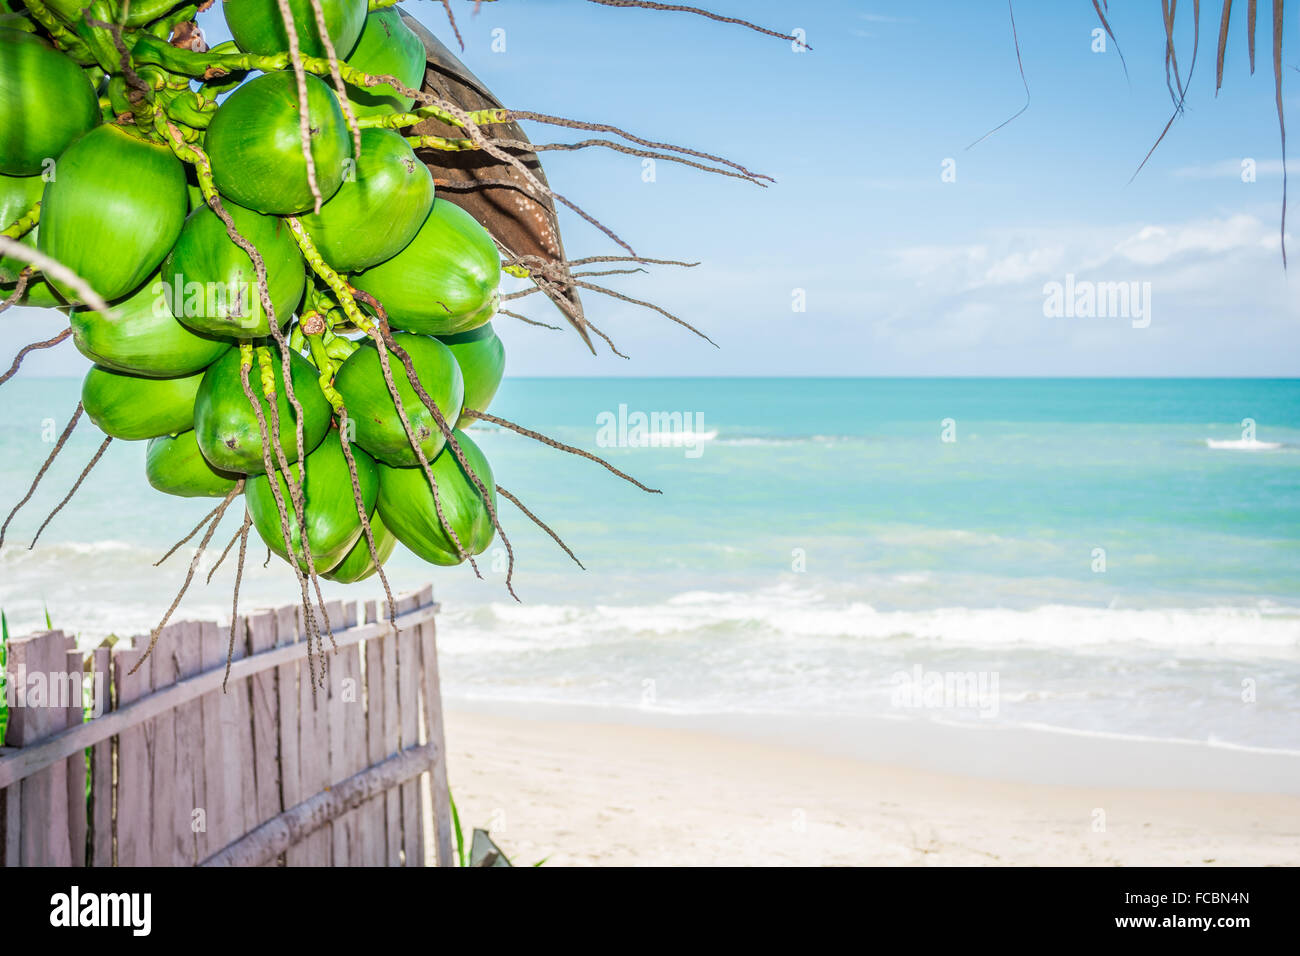 Coconuts in a paradisiacal beach. Praia dos Carneiros, Tamandaré - Pernambuco, Brazil Stock Photo